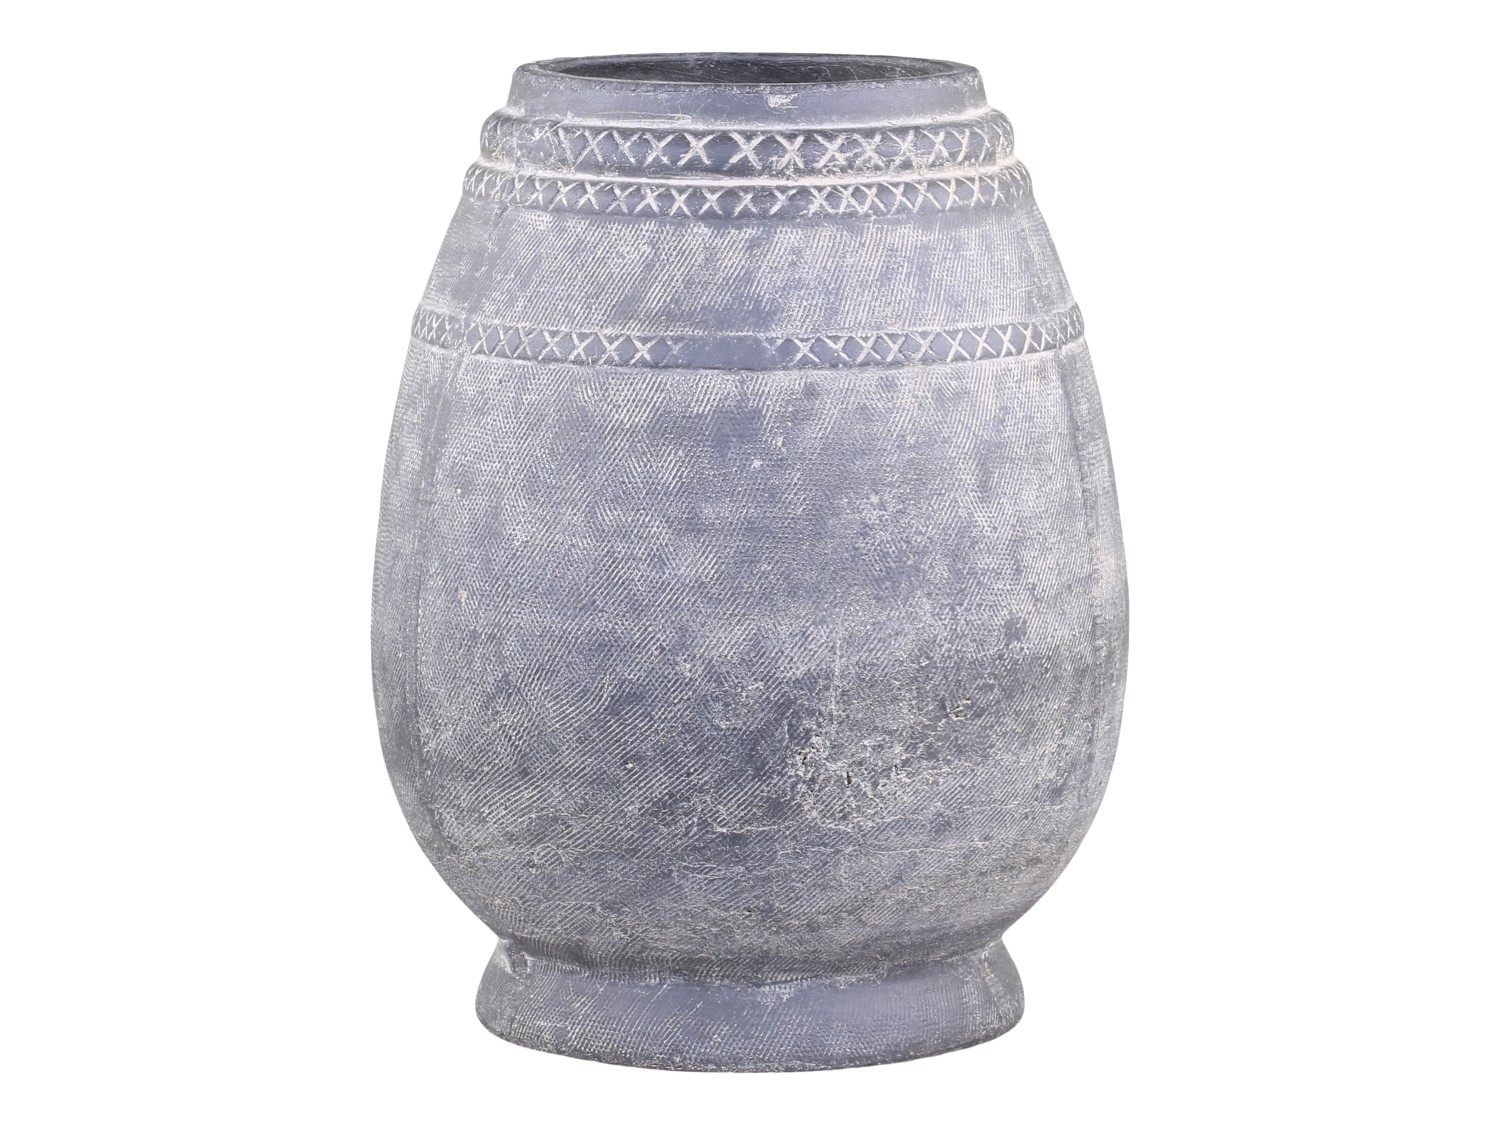 Šedá antik terakotová váza se vzorem Cholet L - Ø 25*32 cm Chic Antique